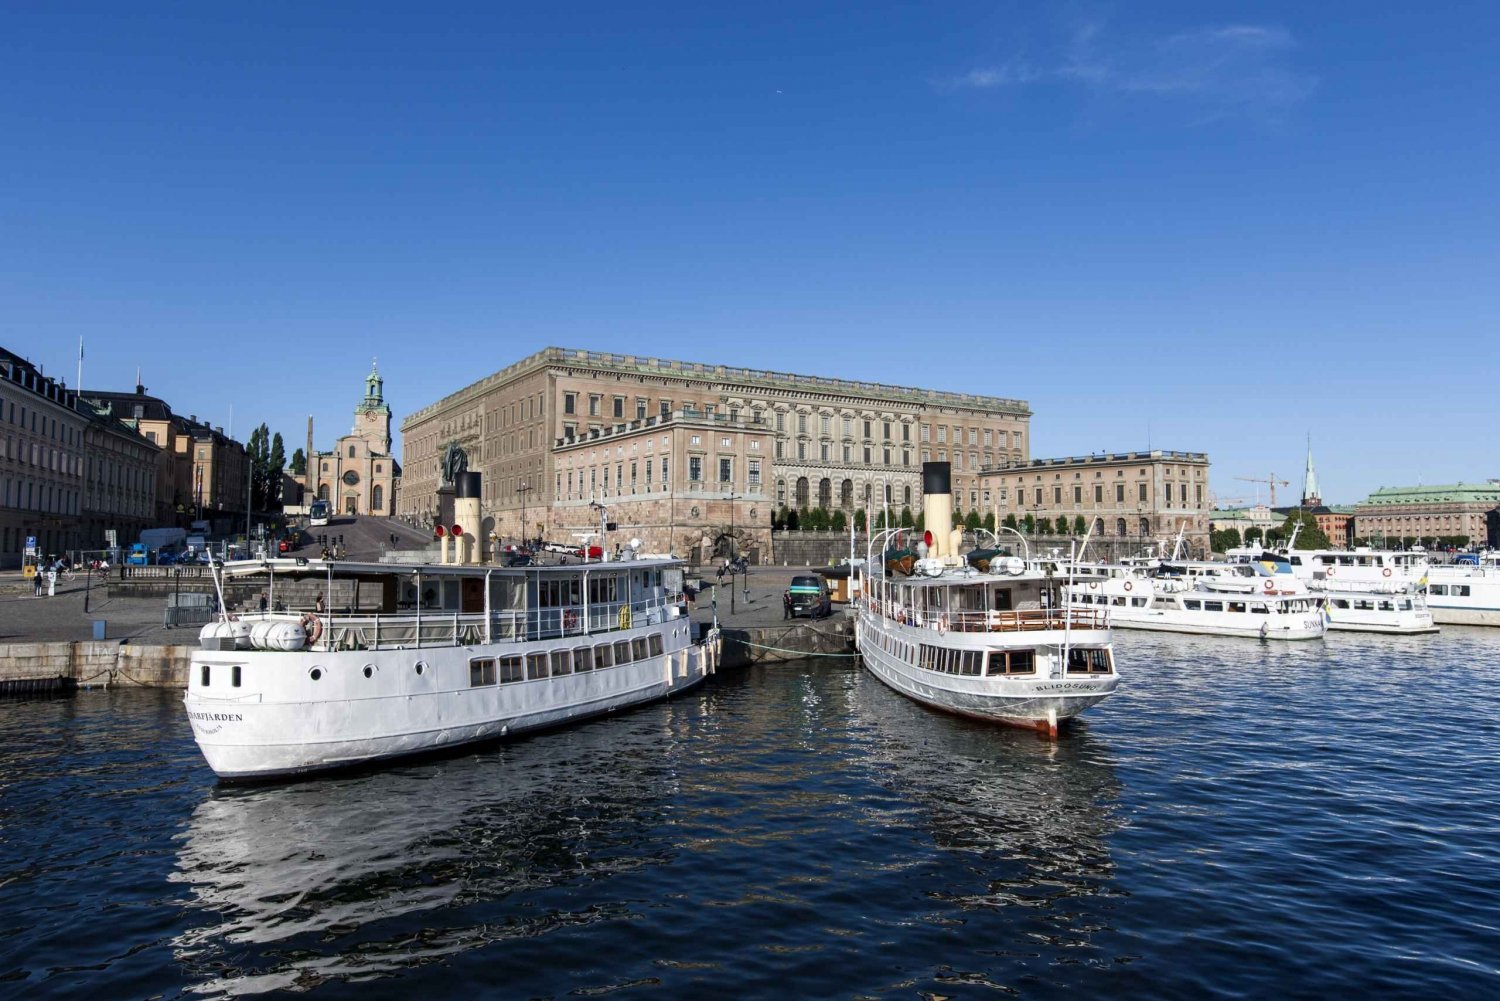 Stockholm: Stadsvandring i Gamla stan med Vasamuseet och båttur